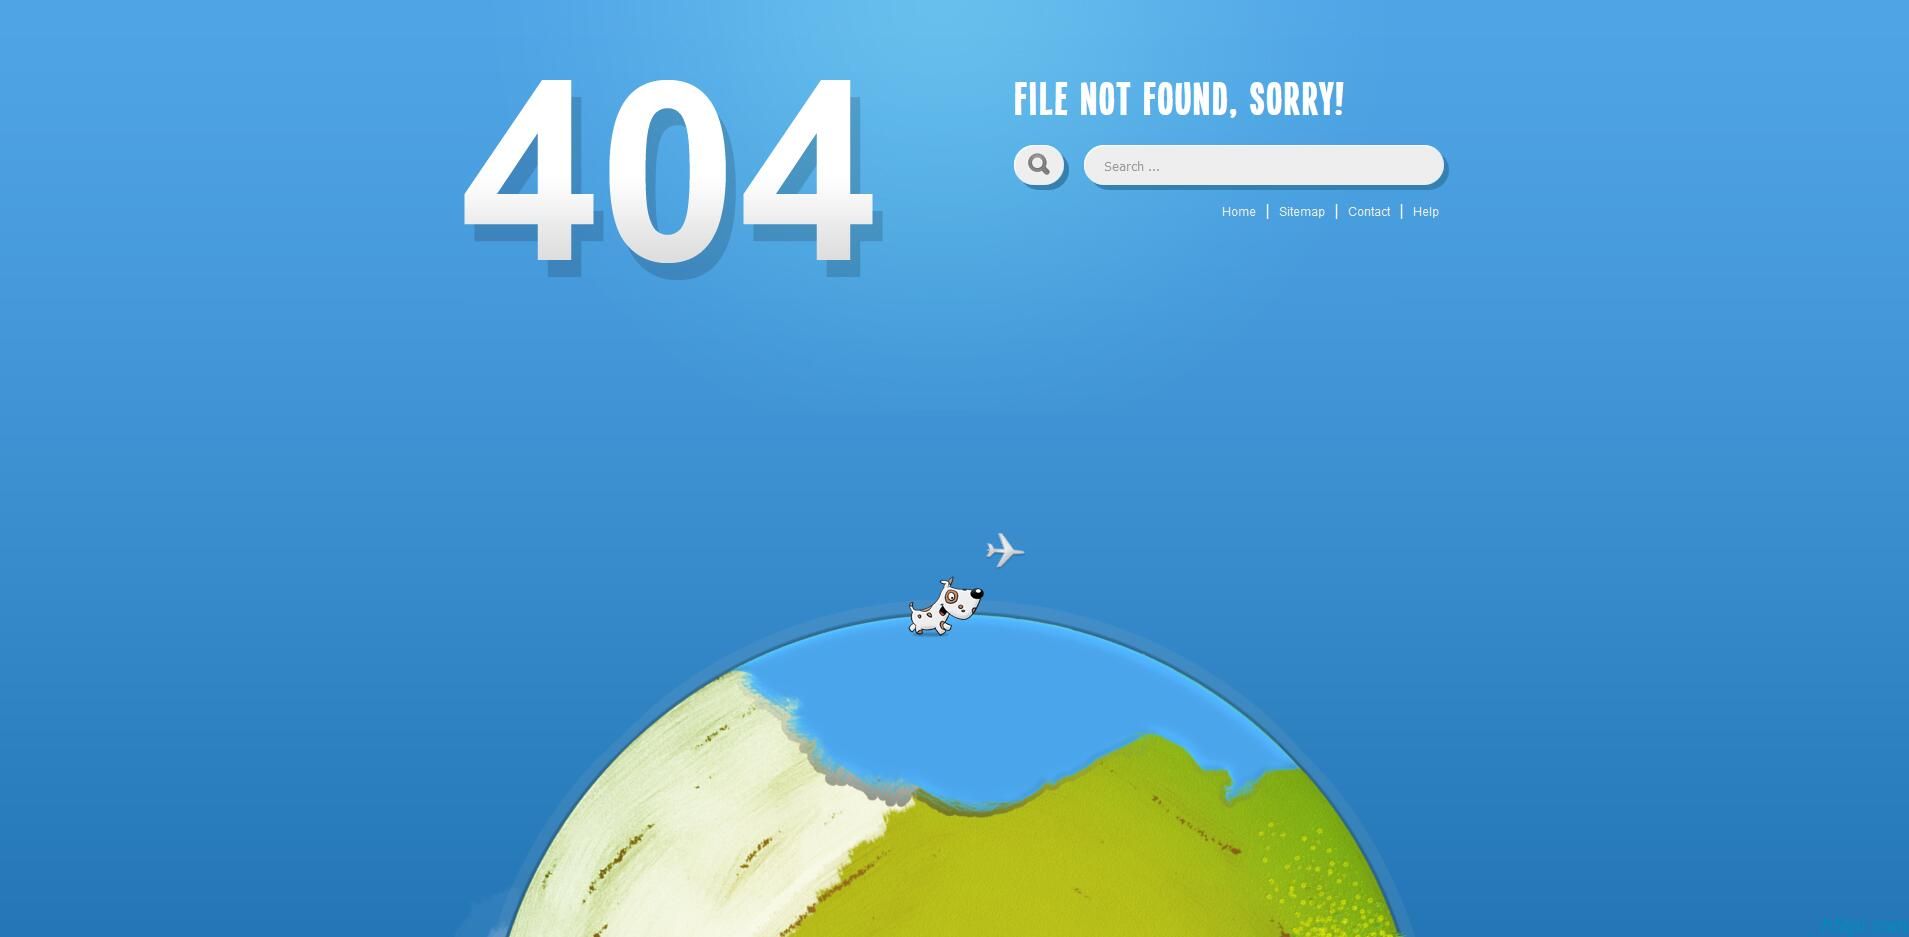 小狗绕地球奔跑404页面是一款可爱的小动物在旋转的地球上奔跑404网站